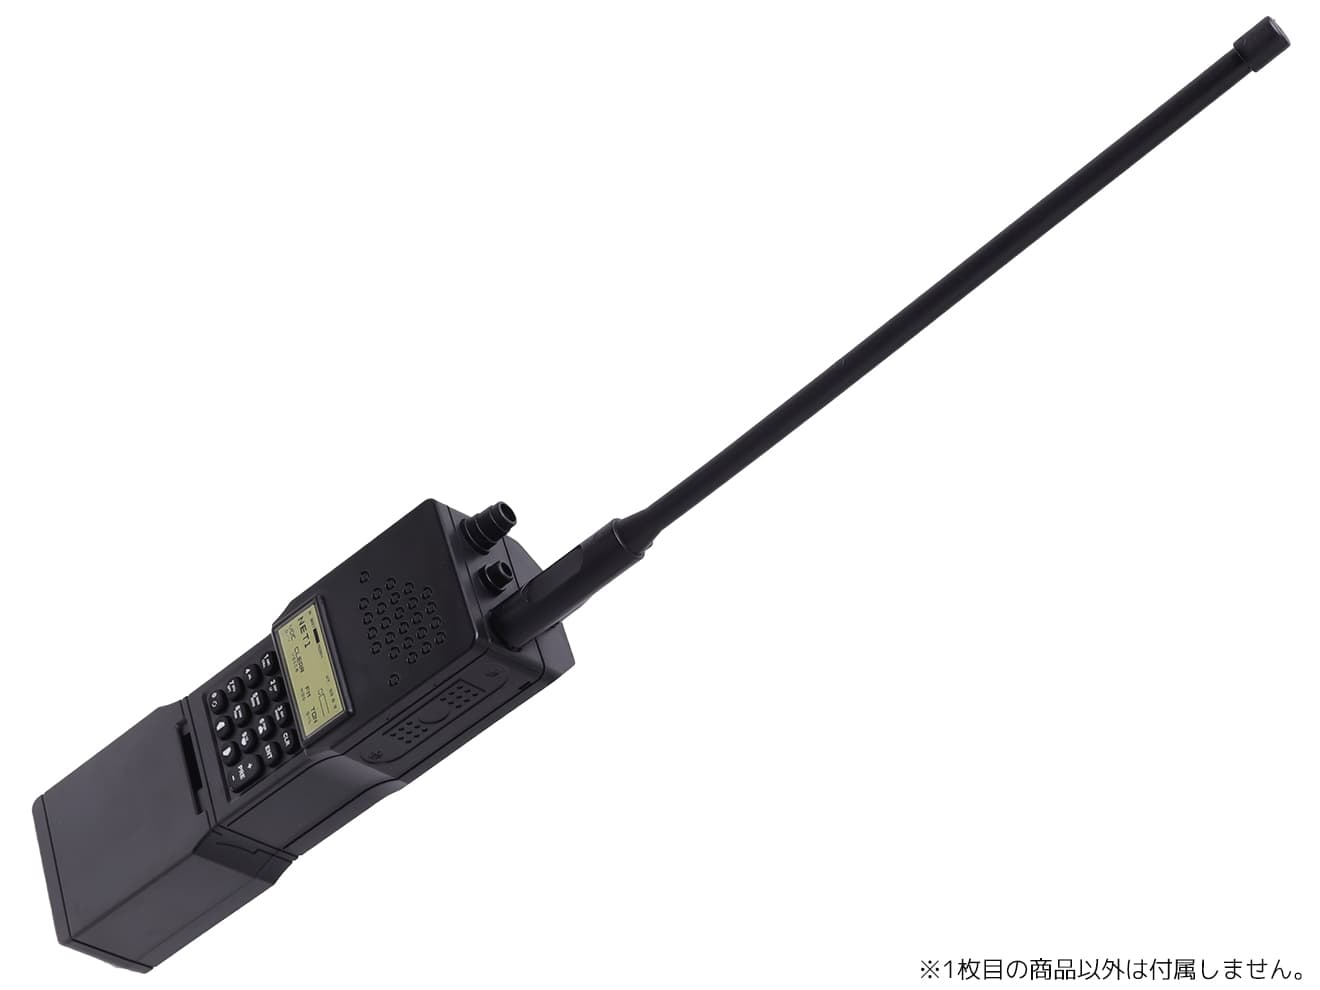 WoSporT PRC-152A ダミーラジオモデル w/ MOLLE アダプター [カラー：BK / OD / TAN]